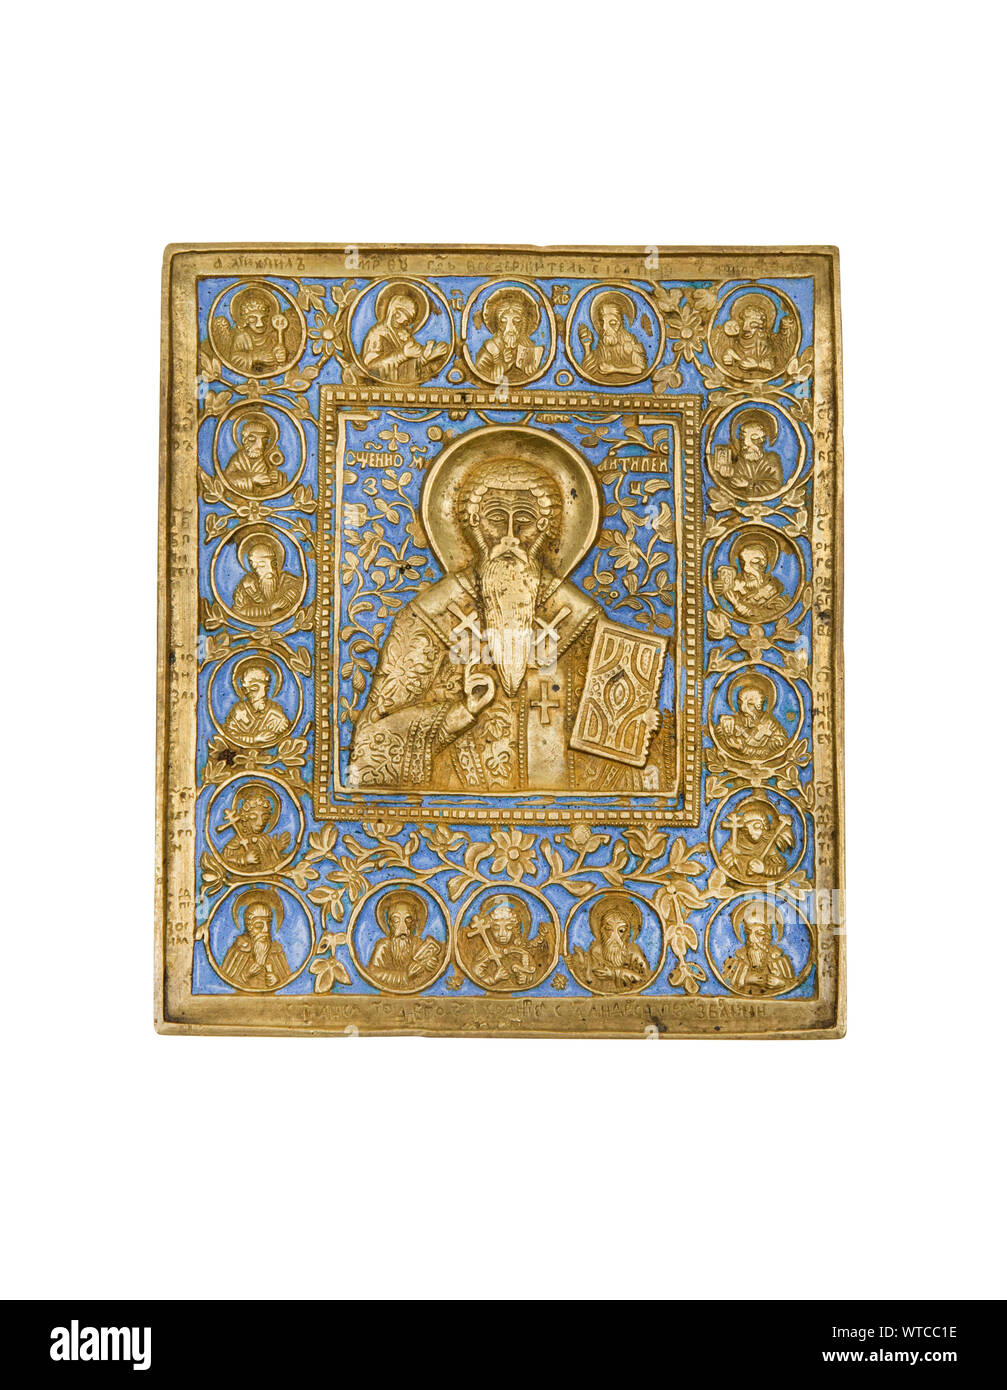 Une amende de bronze et émail russe icône représentant Saint Antipas on croit être l'Antipas mentionnée dans le livre de l'Apocalypse. Banque D'Images